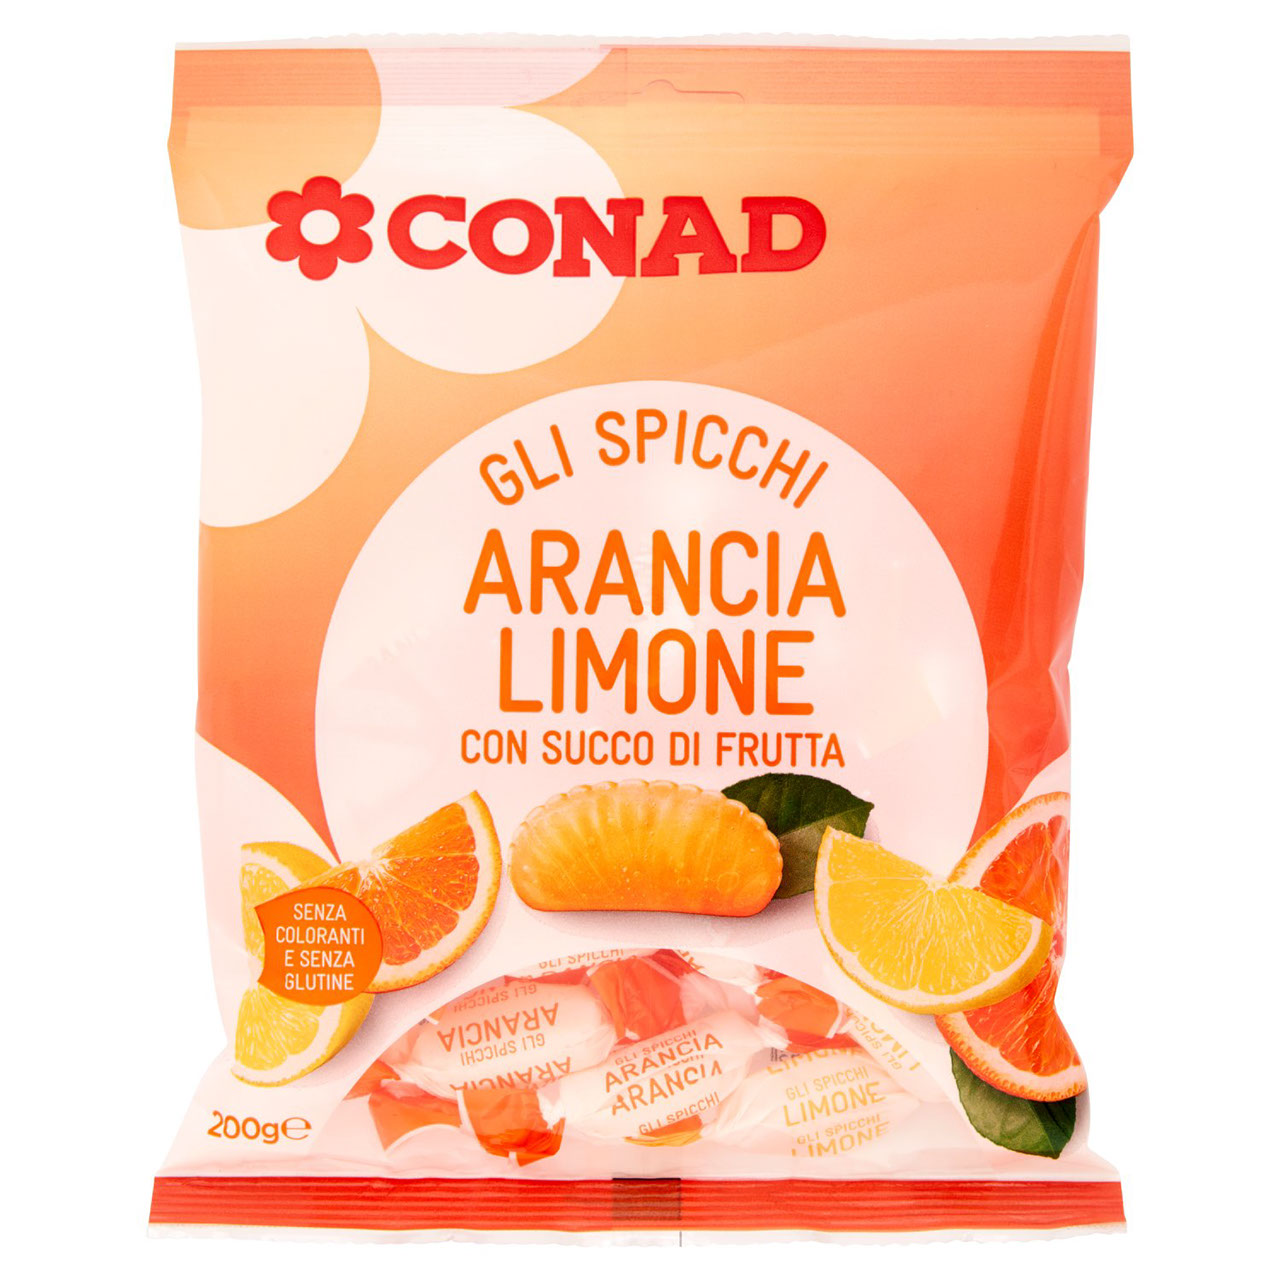 Gli Spicchi Arancia Limone 200 g Conad